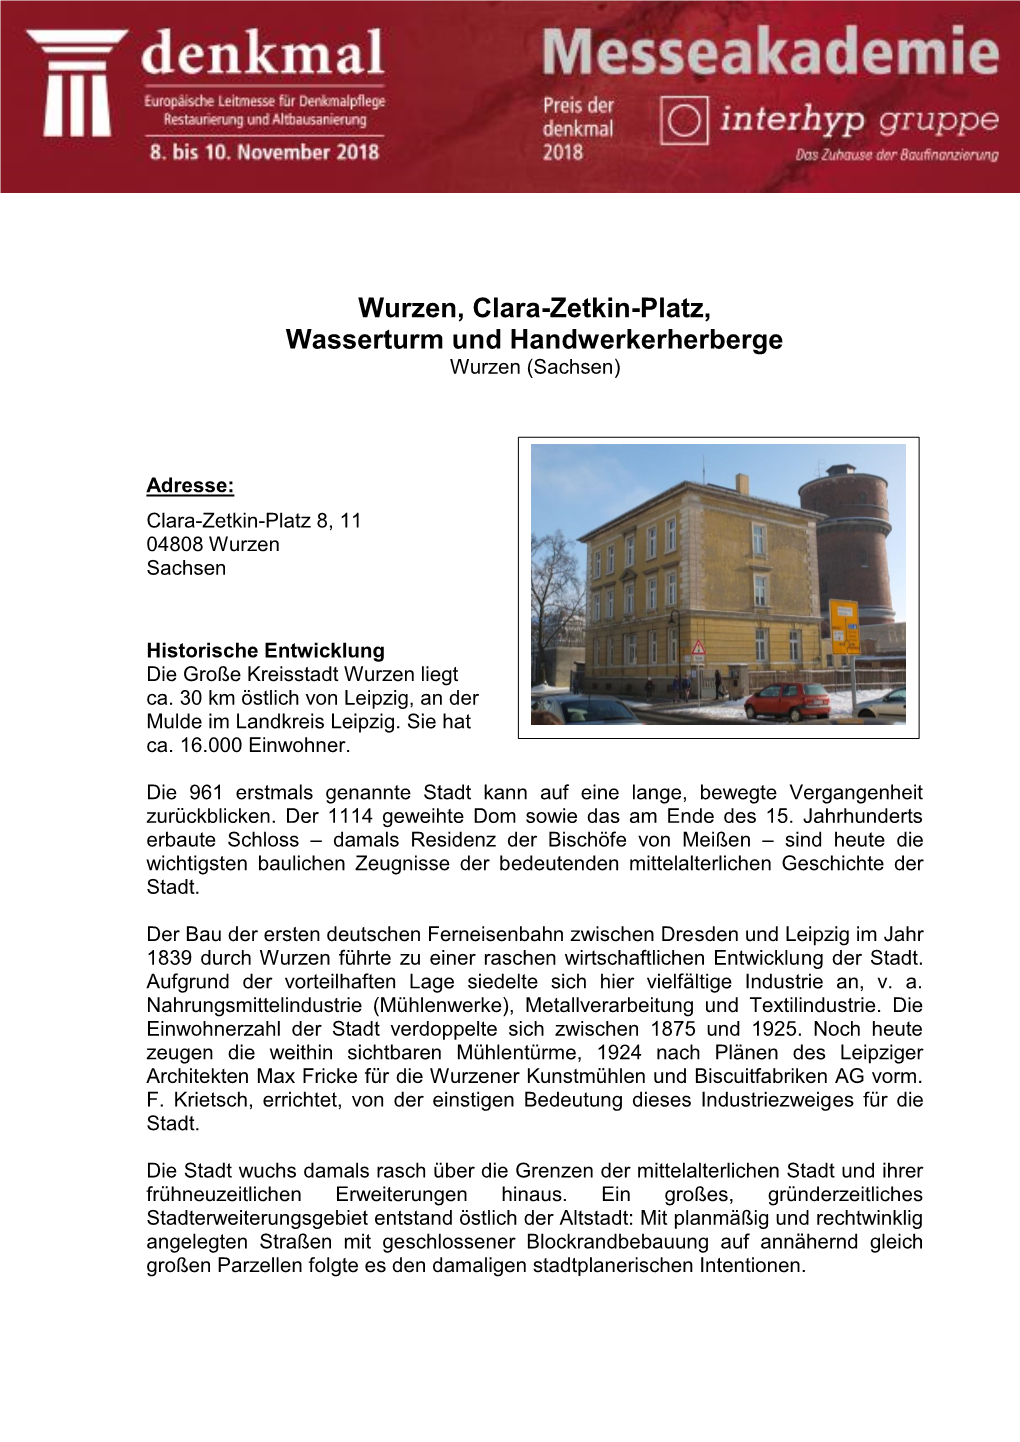 Wurzen, Clara-Zetkin-Platz, Wasserturm Und Handwerkerherberge Wurzen (Sachsen)